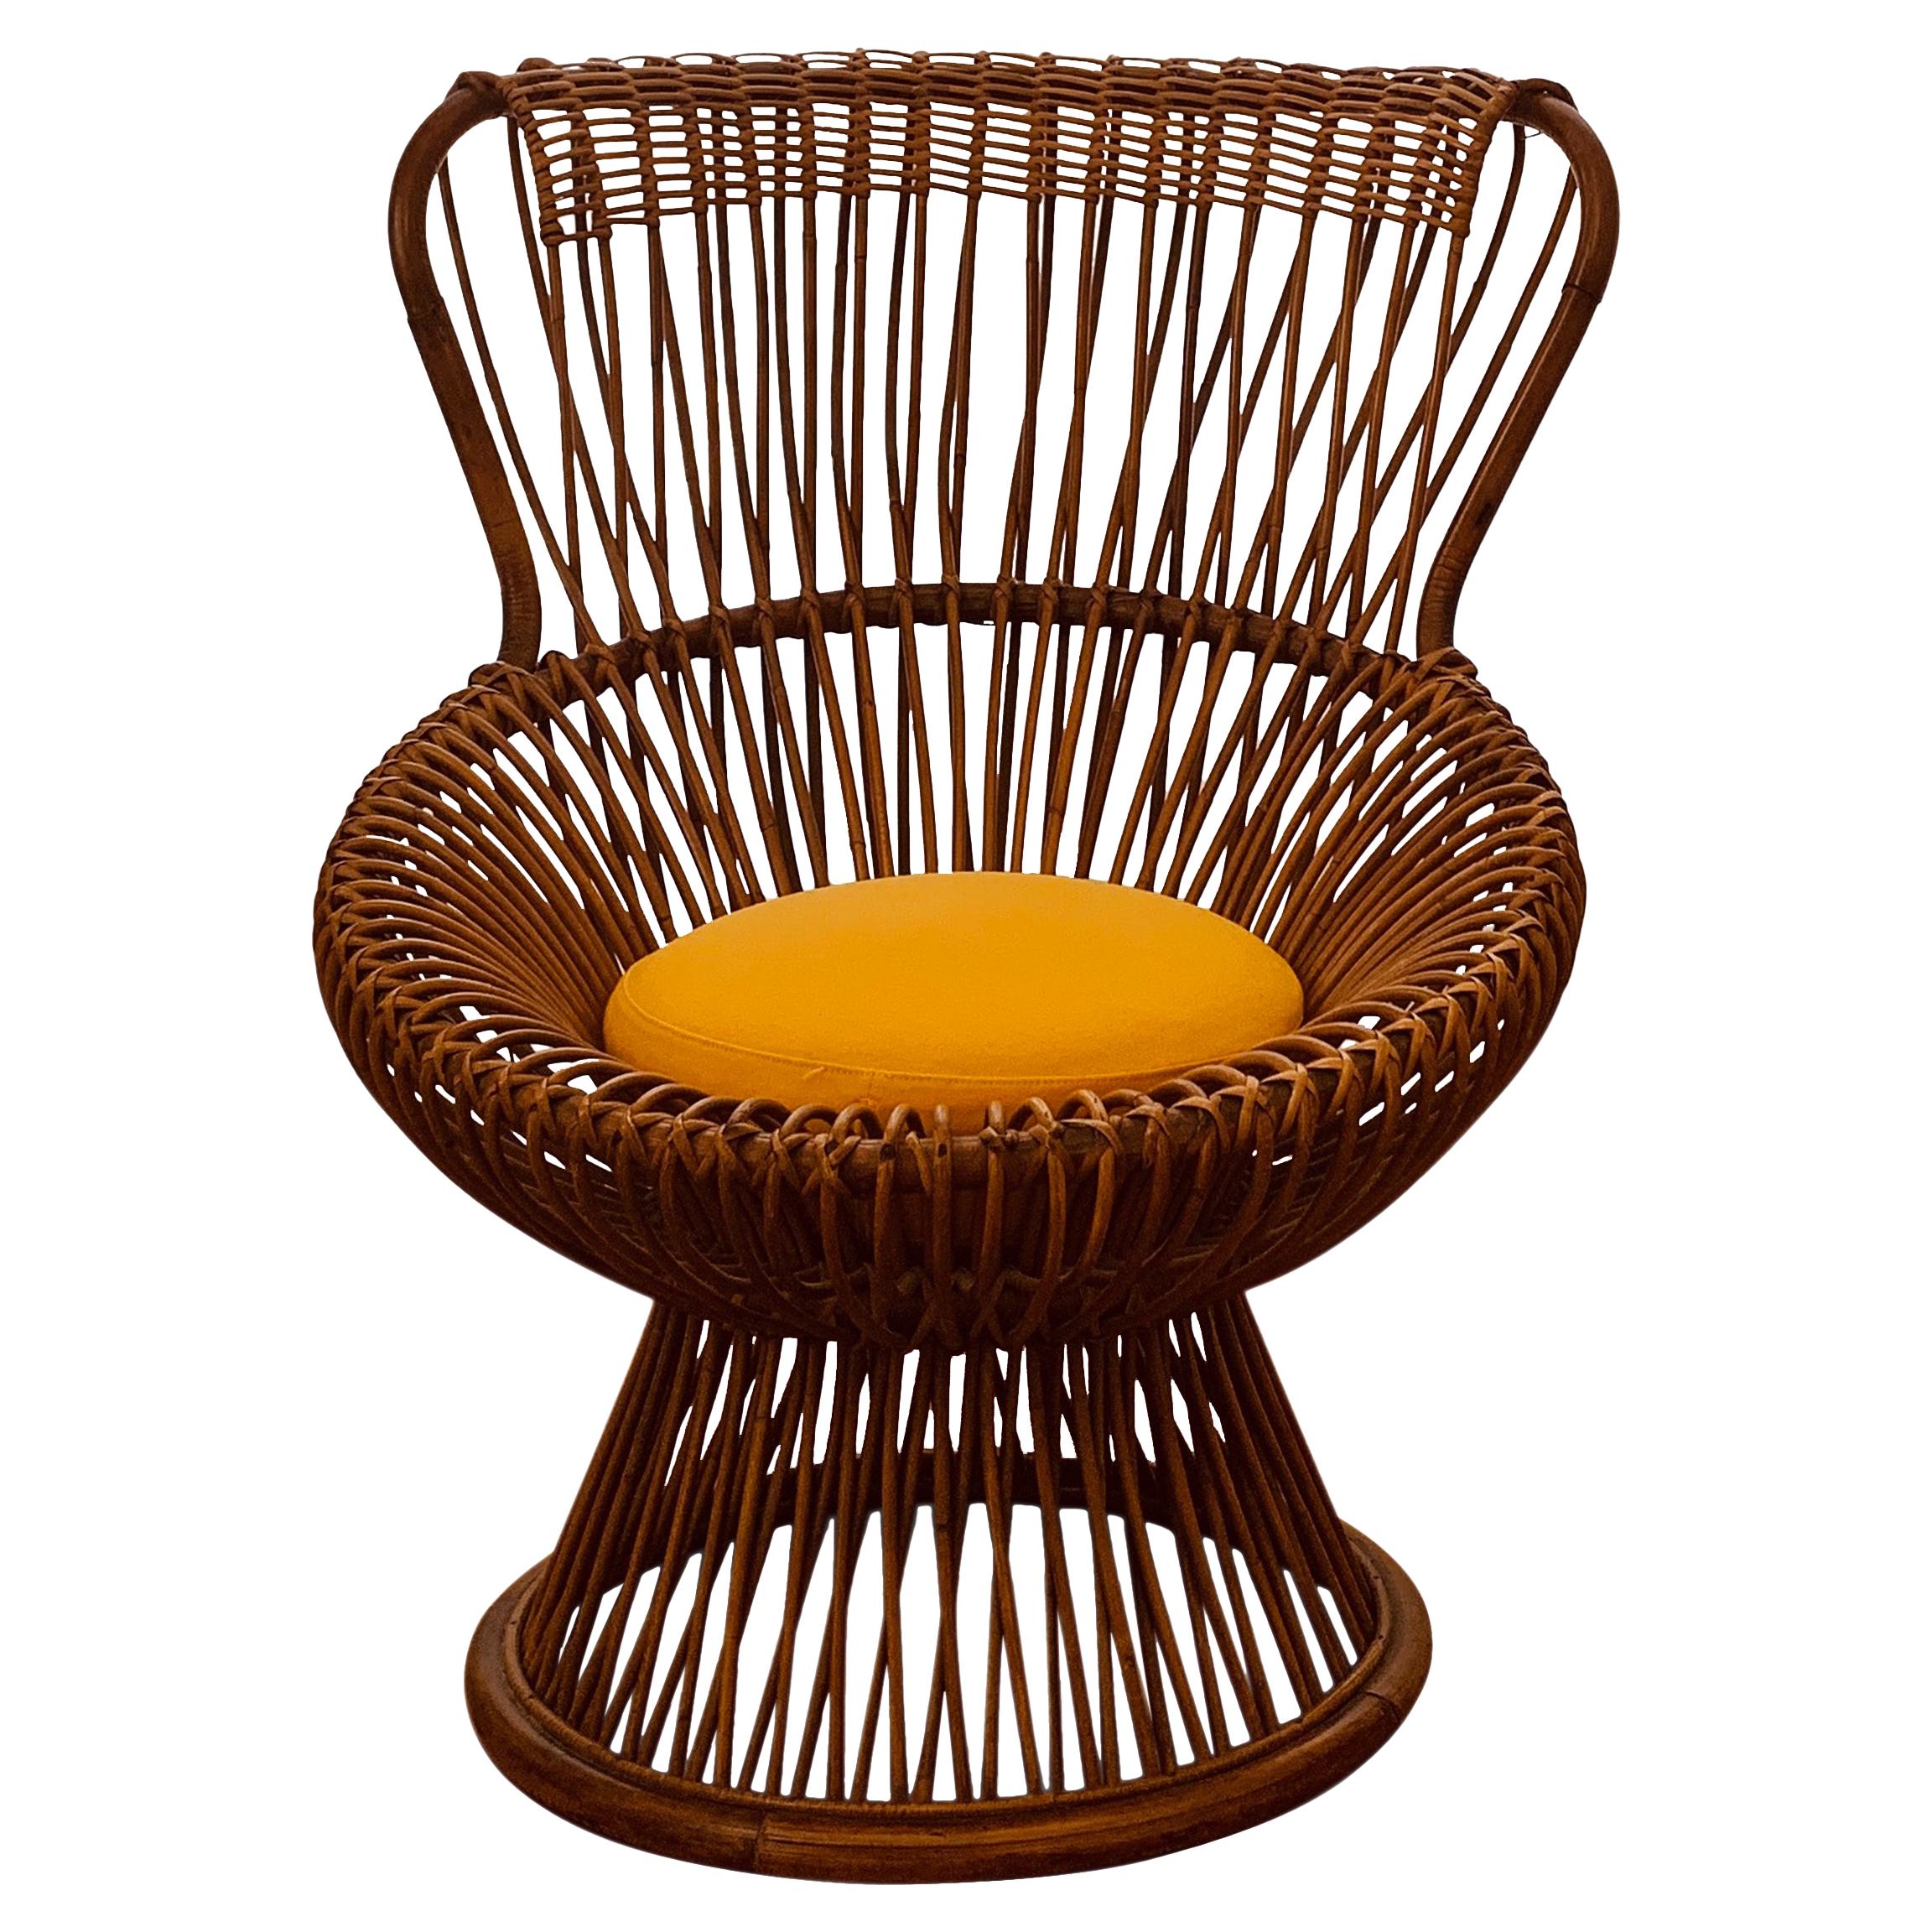 Margherita Chair